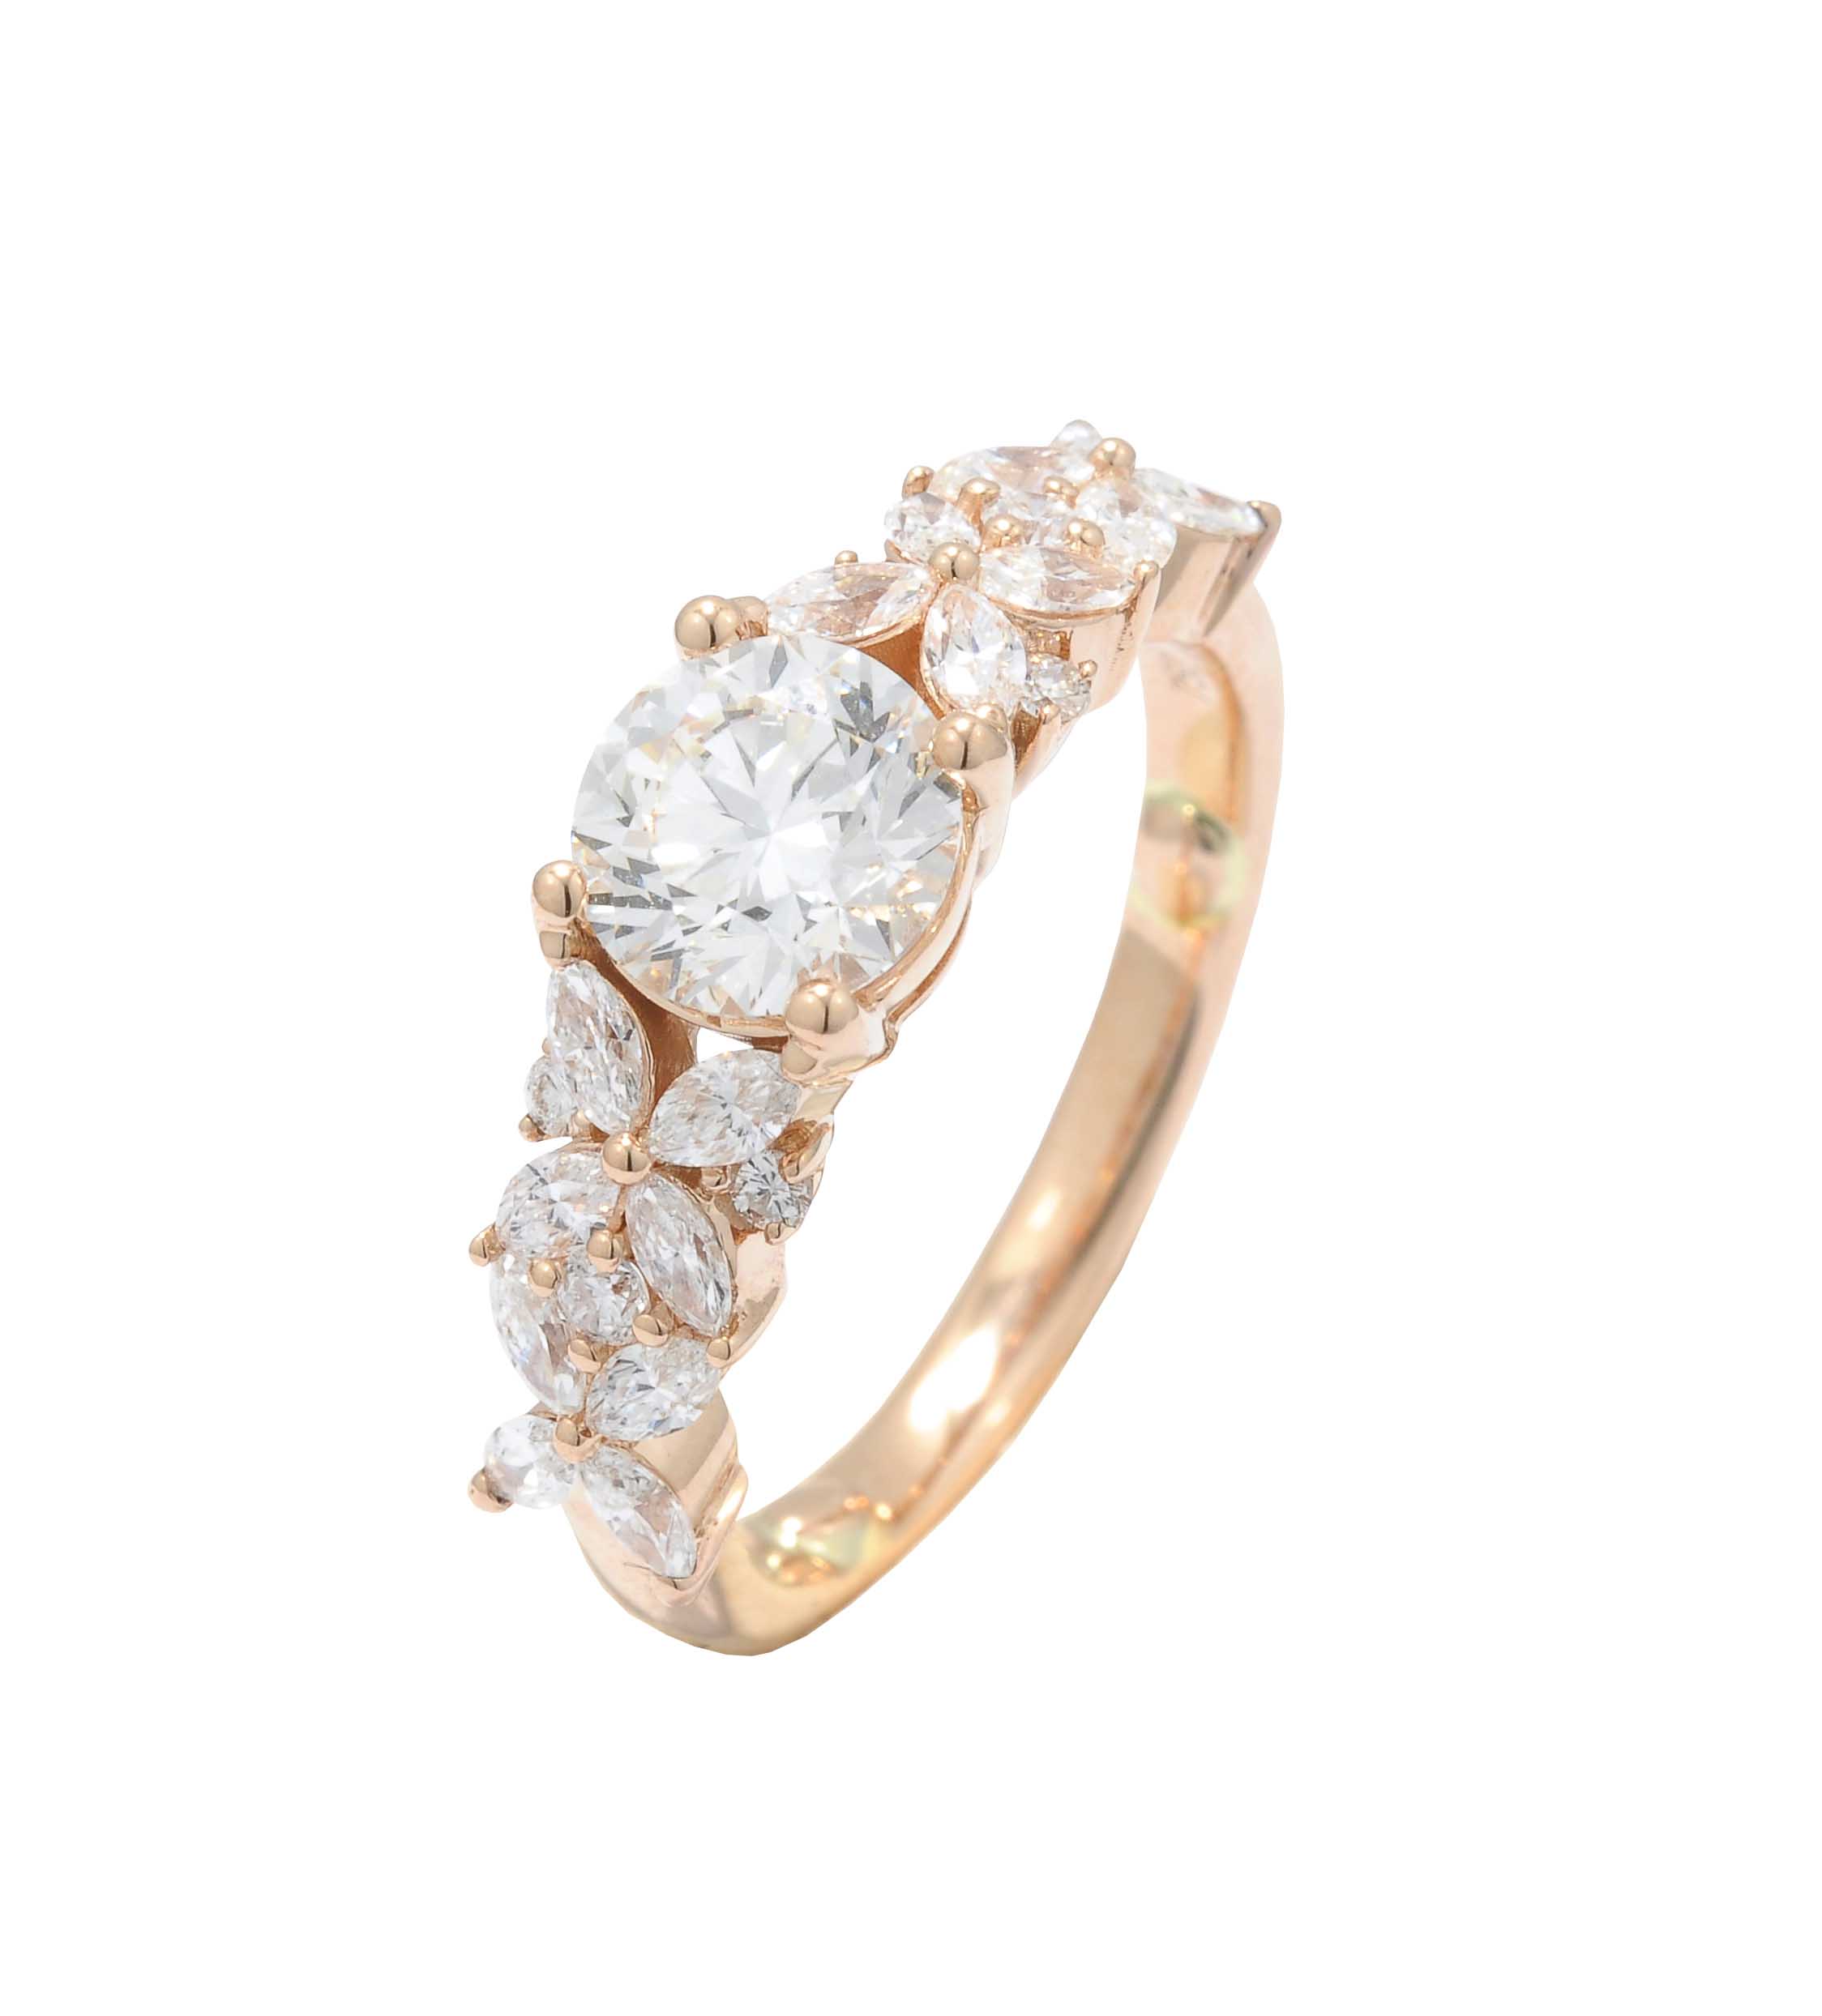 Fancy Shape Diamond Ring In 18k Rose Gold.